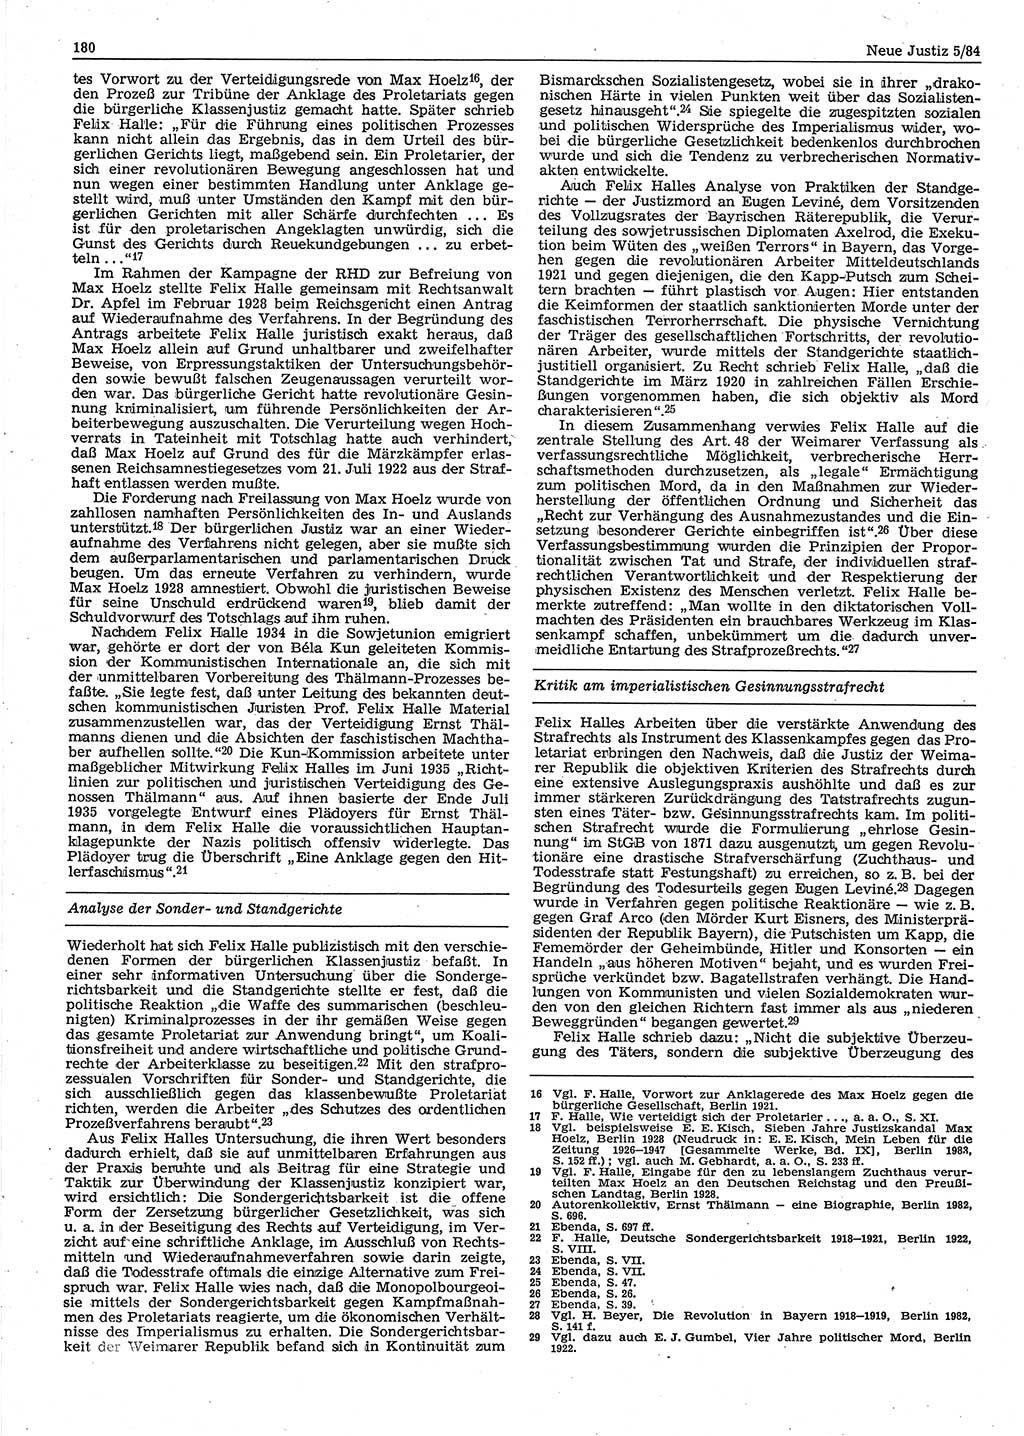 Neue Justiz (NJ), Zeitschrift für sozialistisches Recht und Gesetzlichkeit [Deutsche Demokratische Republik (DDR)], 38. Jahrgang 1984, Seite 180 (NJ DDR 1984, S. 180)